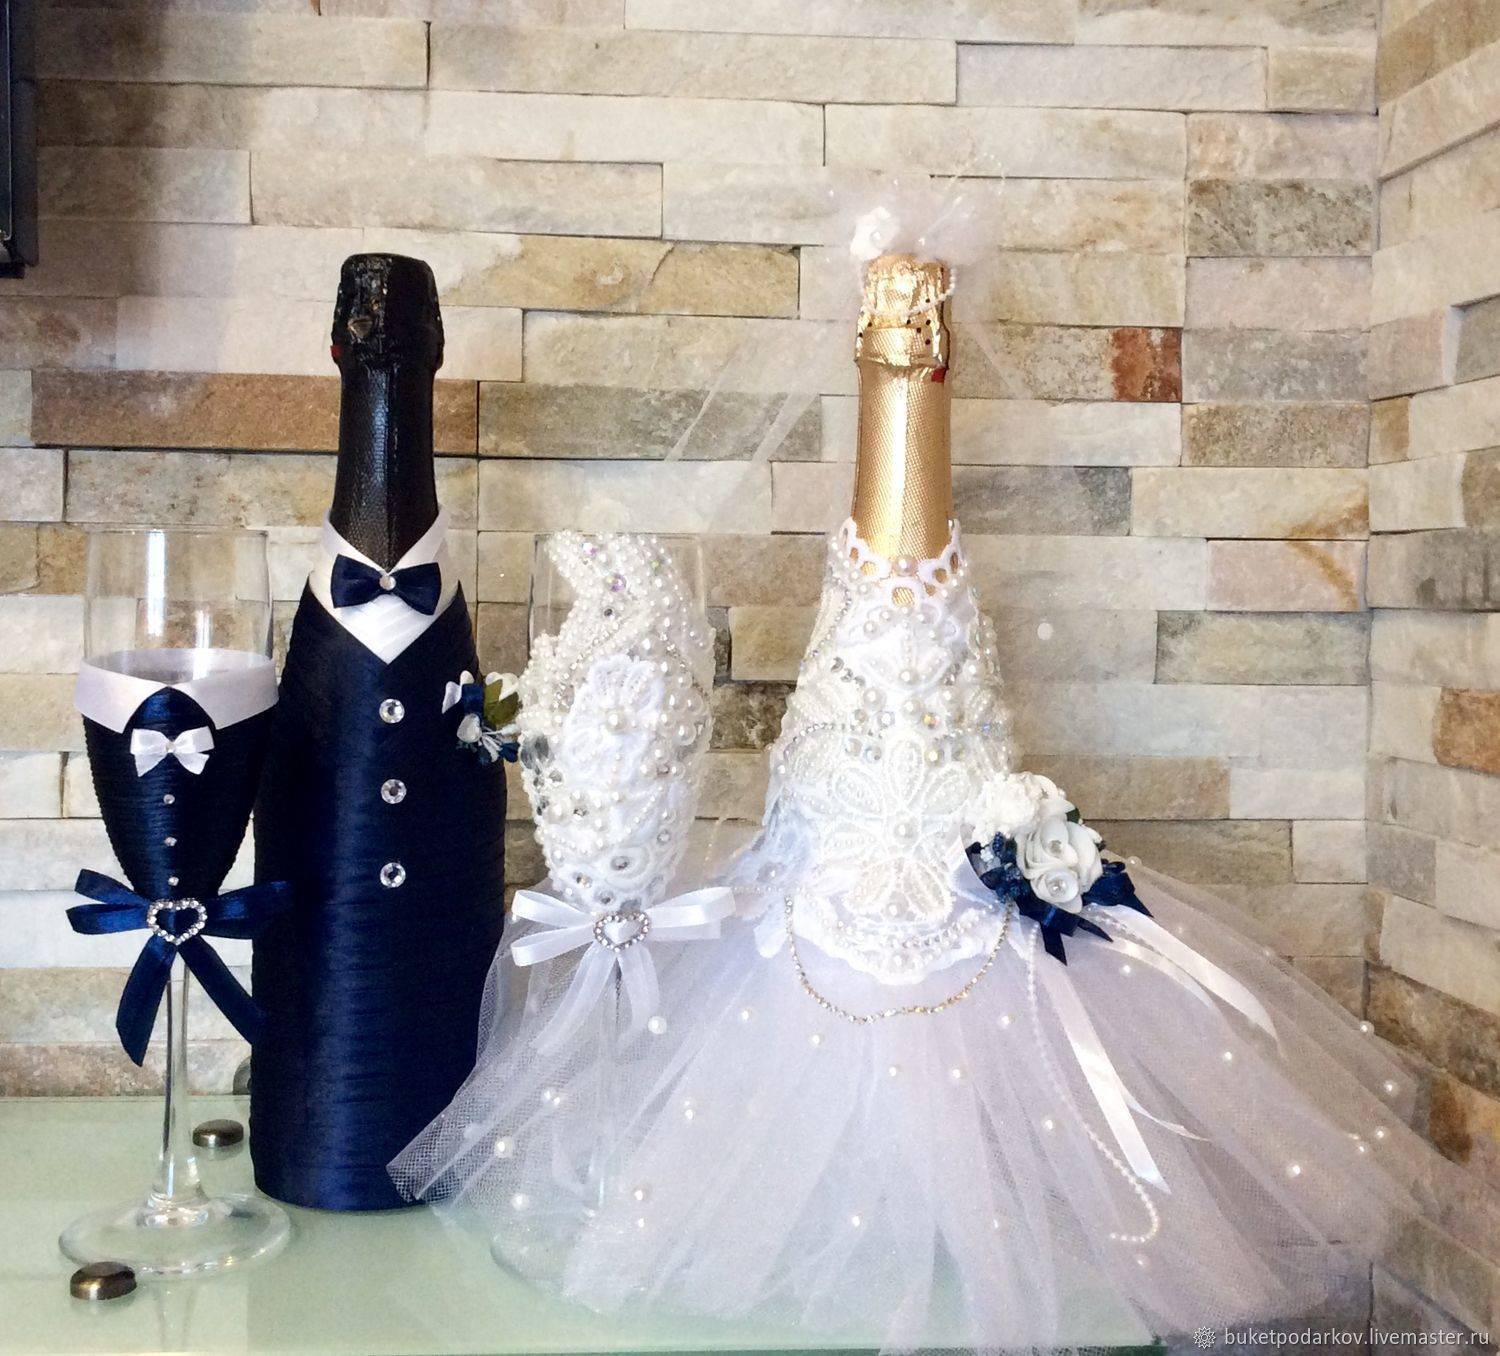 Как украсить бутылку шампанского на новый год, свадьбу, день рождения, юбилей своими руками? оформление шампанского к празднику своими руками